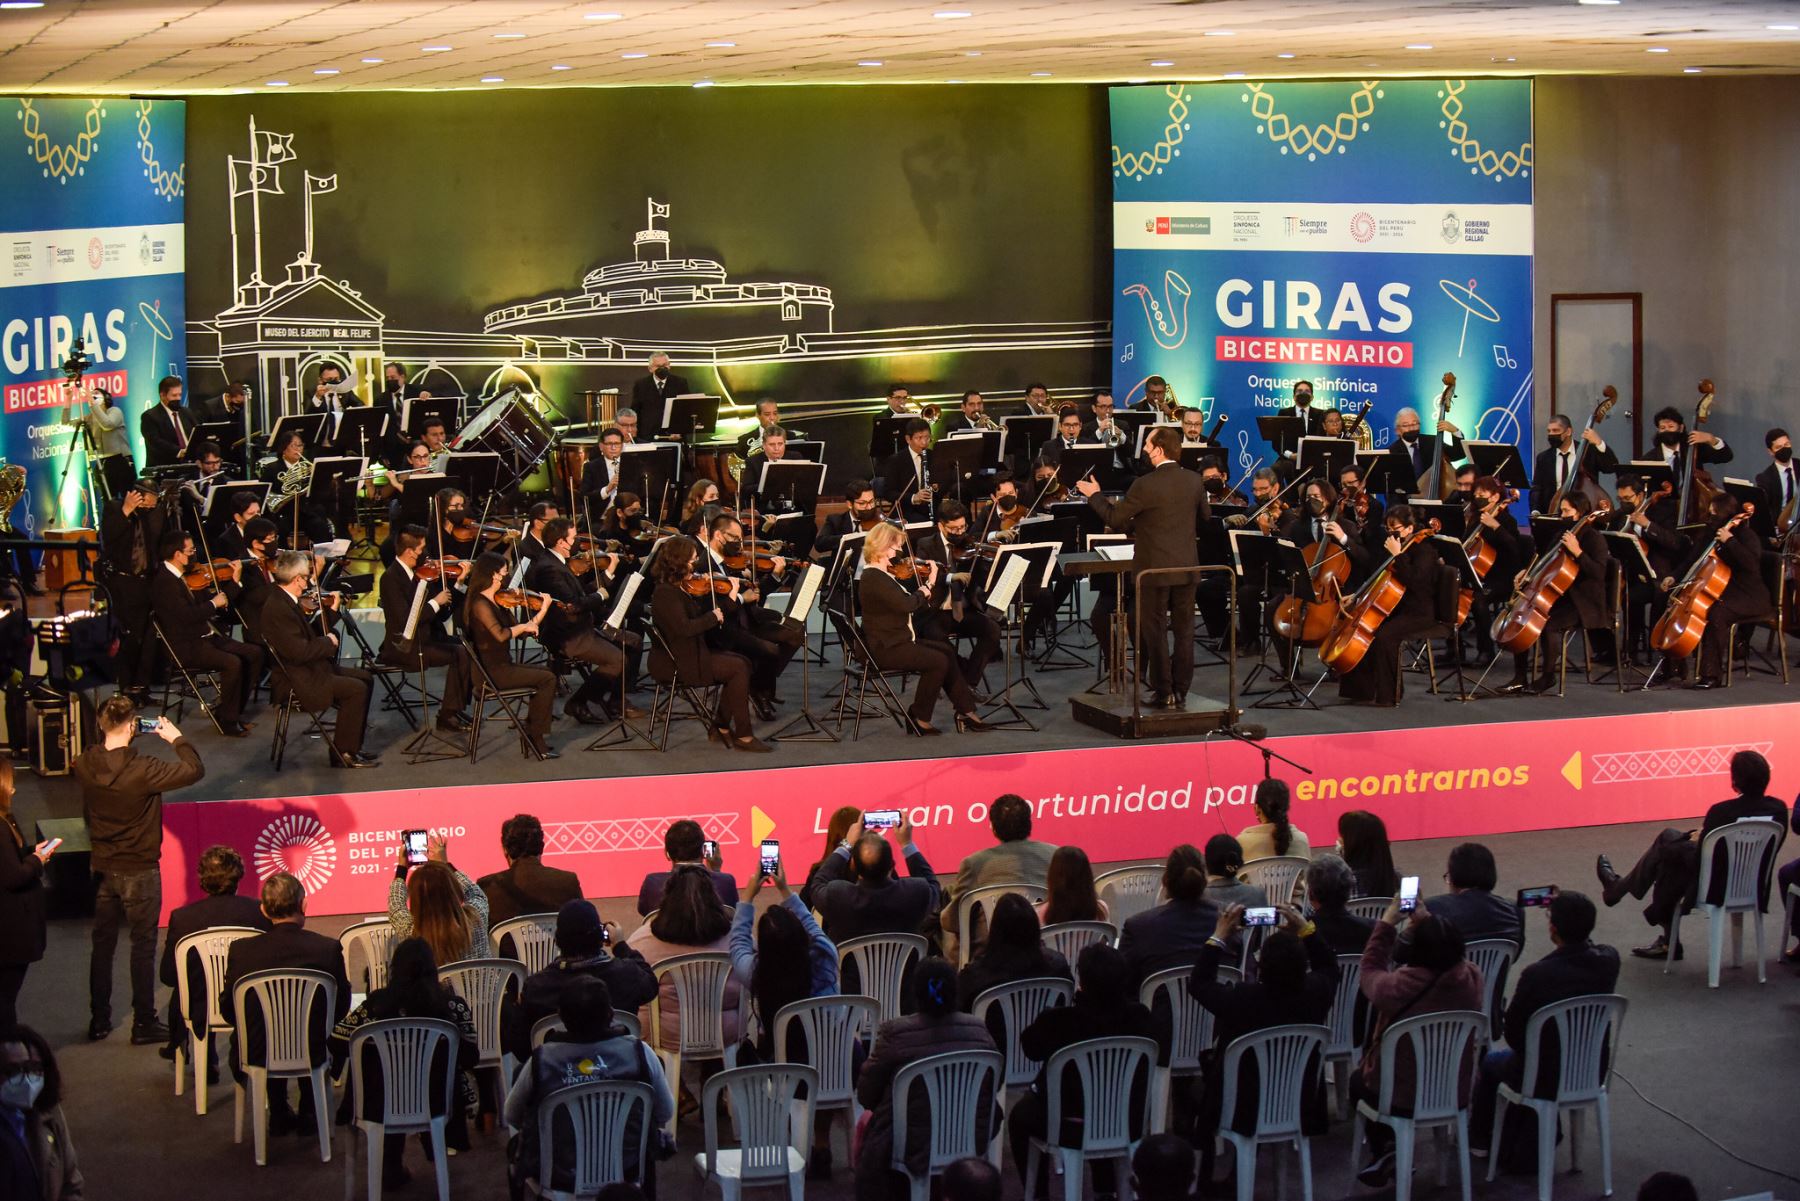 Orquesta Sinfónica Nacional interpretó clásicos mundiales y piezas peruanas como “La flor de la canela” y “El cóndor pasa”. Evento se realizó en la víspera del aniversario del Callao.
Foto: Bicentenario Perú 2021